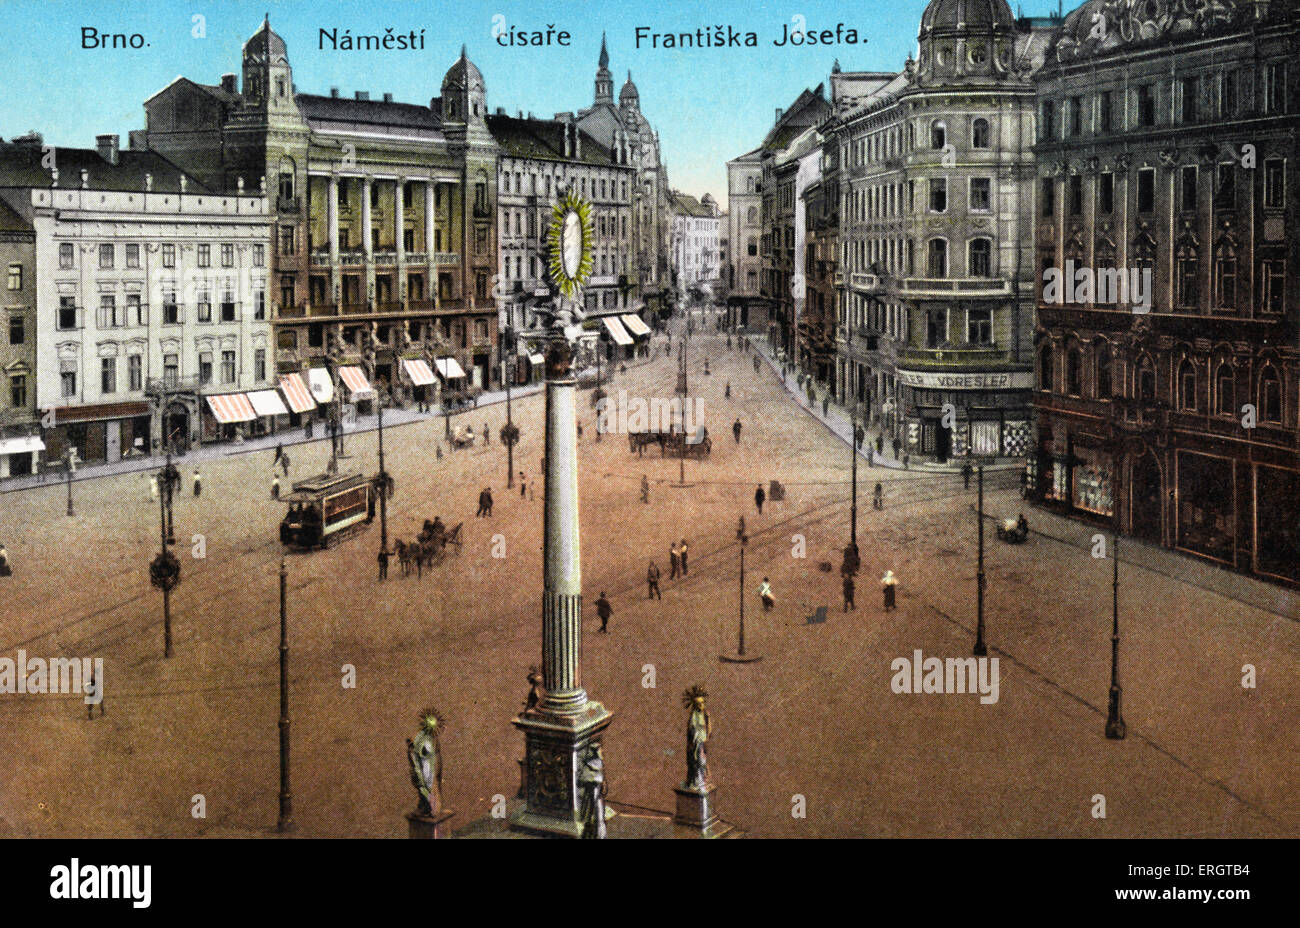 Bnro color - fotografía de la plaza de la libertad en la ciudad Checa de principios del siglo XX. Janacek conexión. Foto de stock